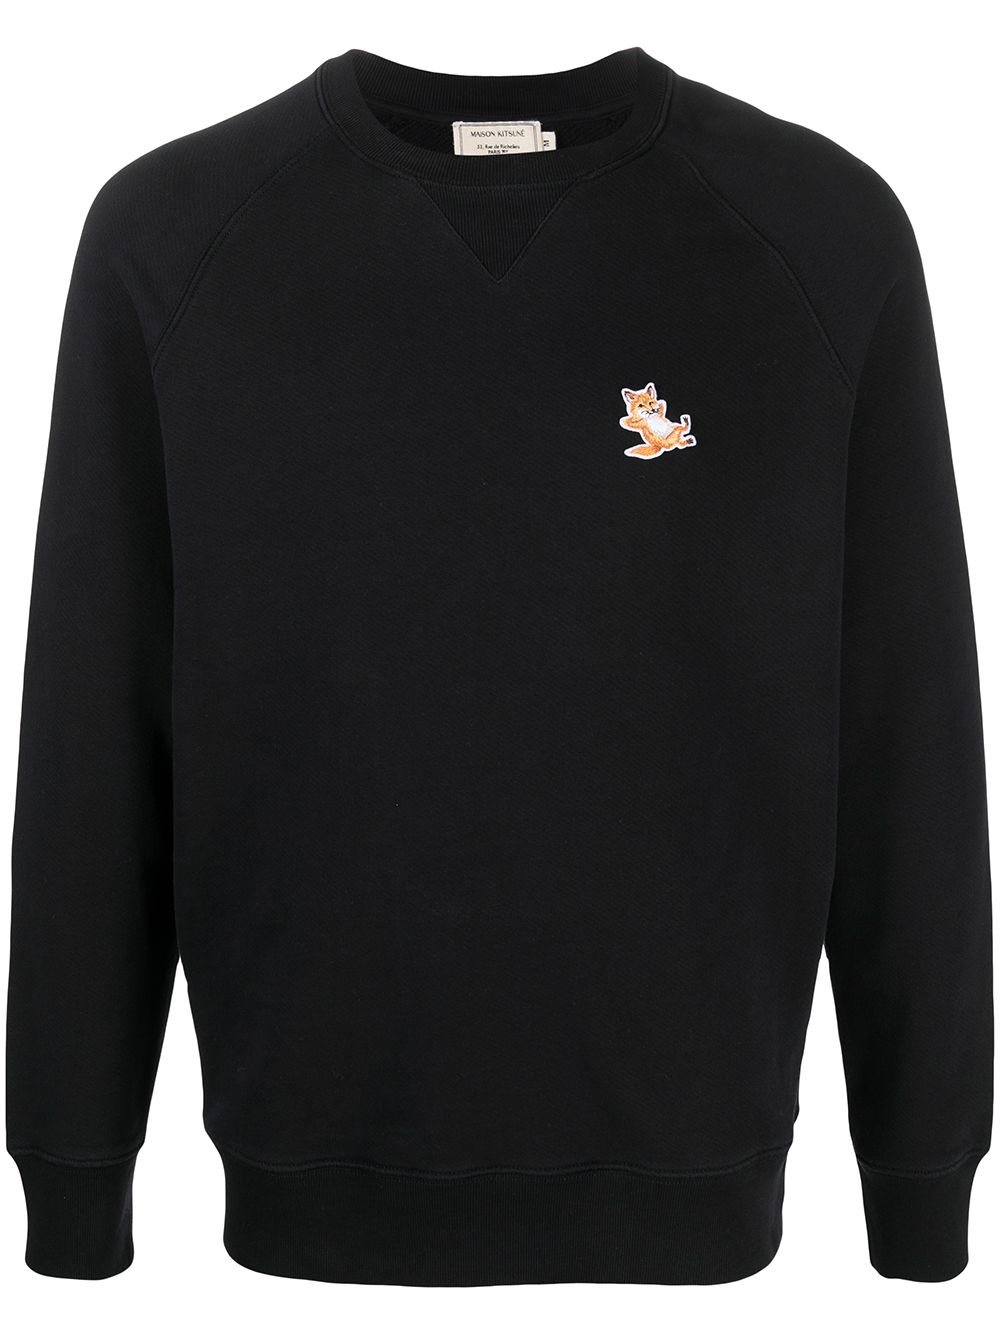 Maison Kitsune embroidered-logo sweatshirt (Size: S)